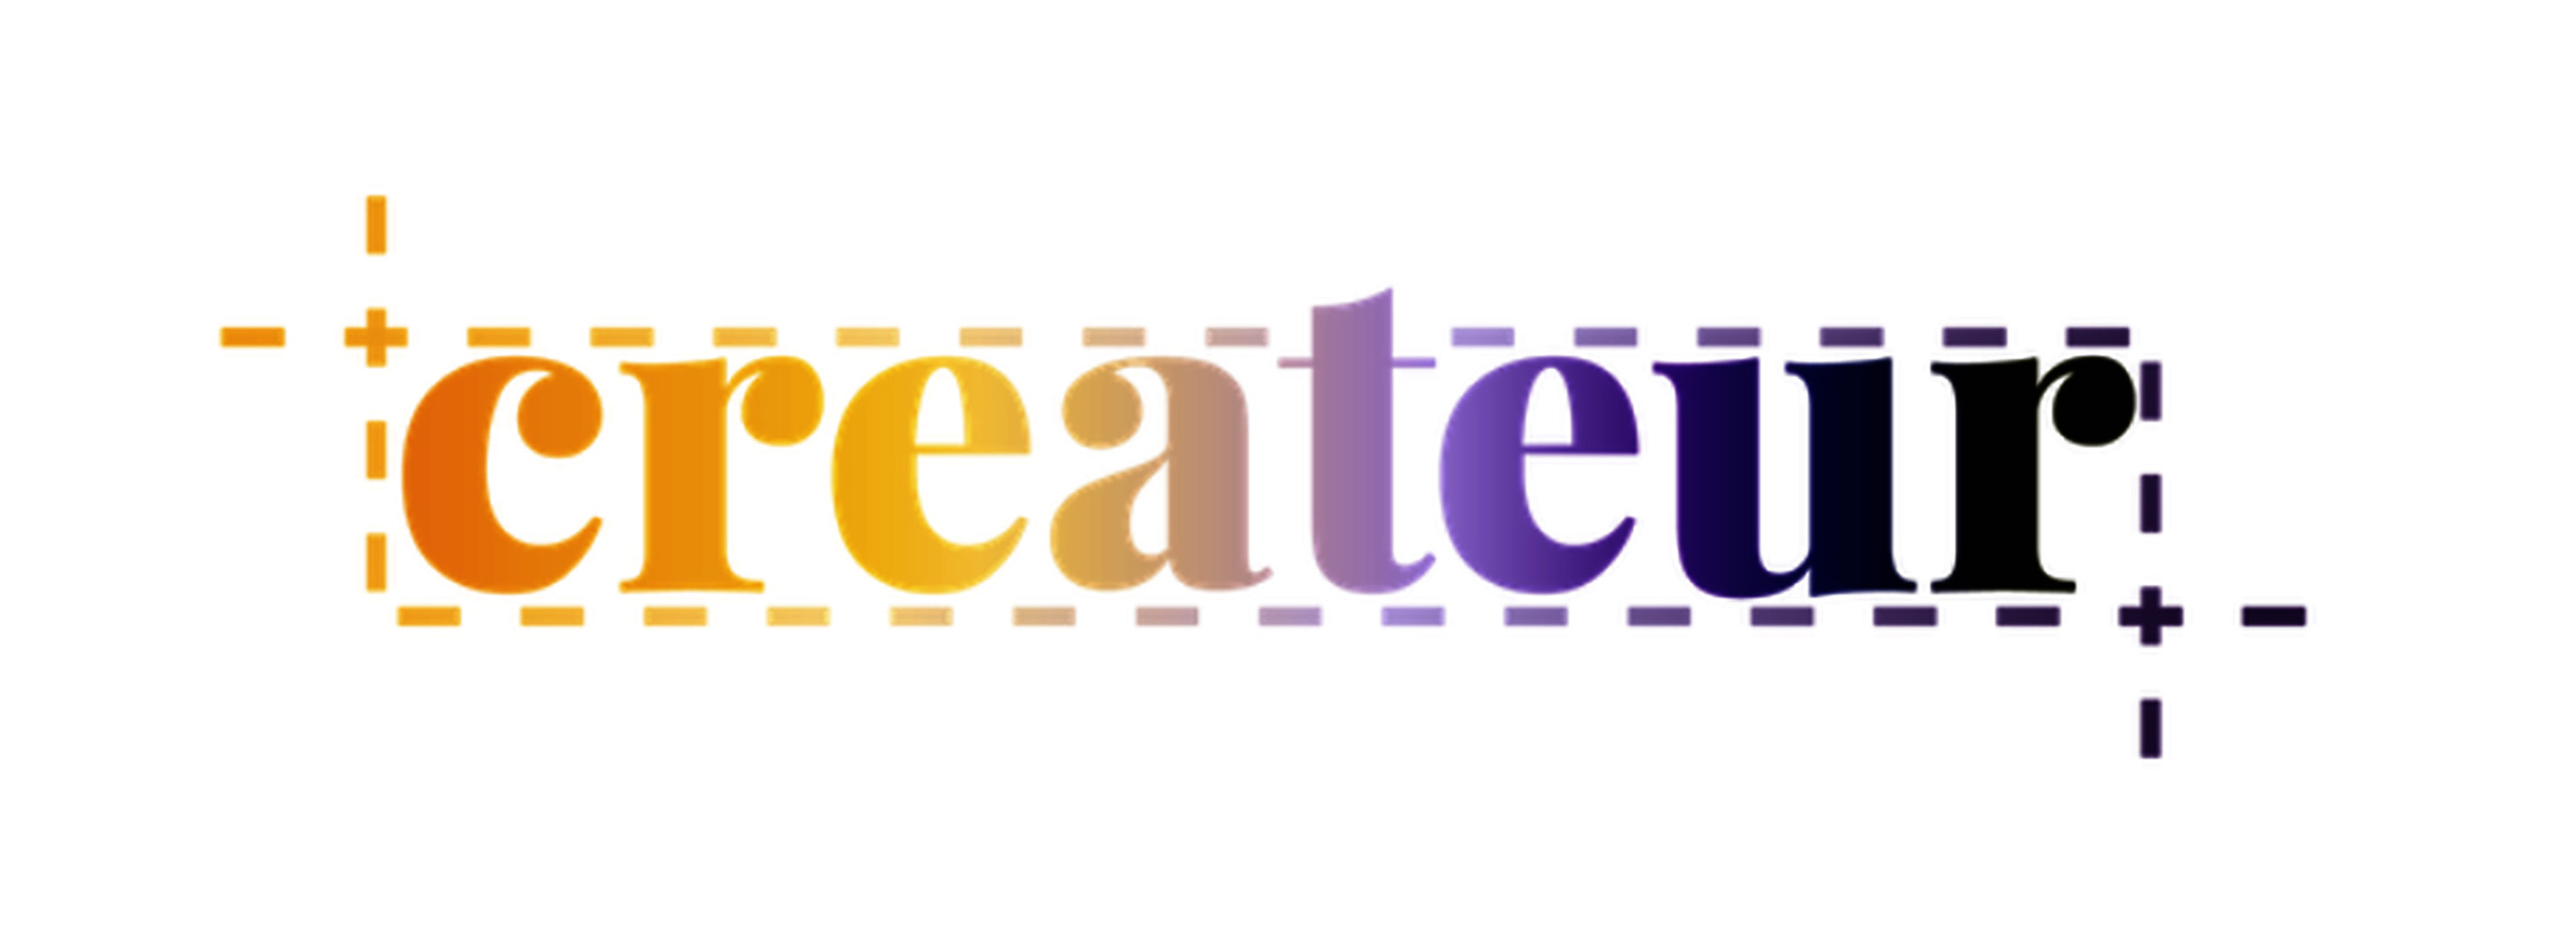 Createur competition logo